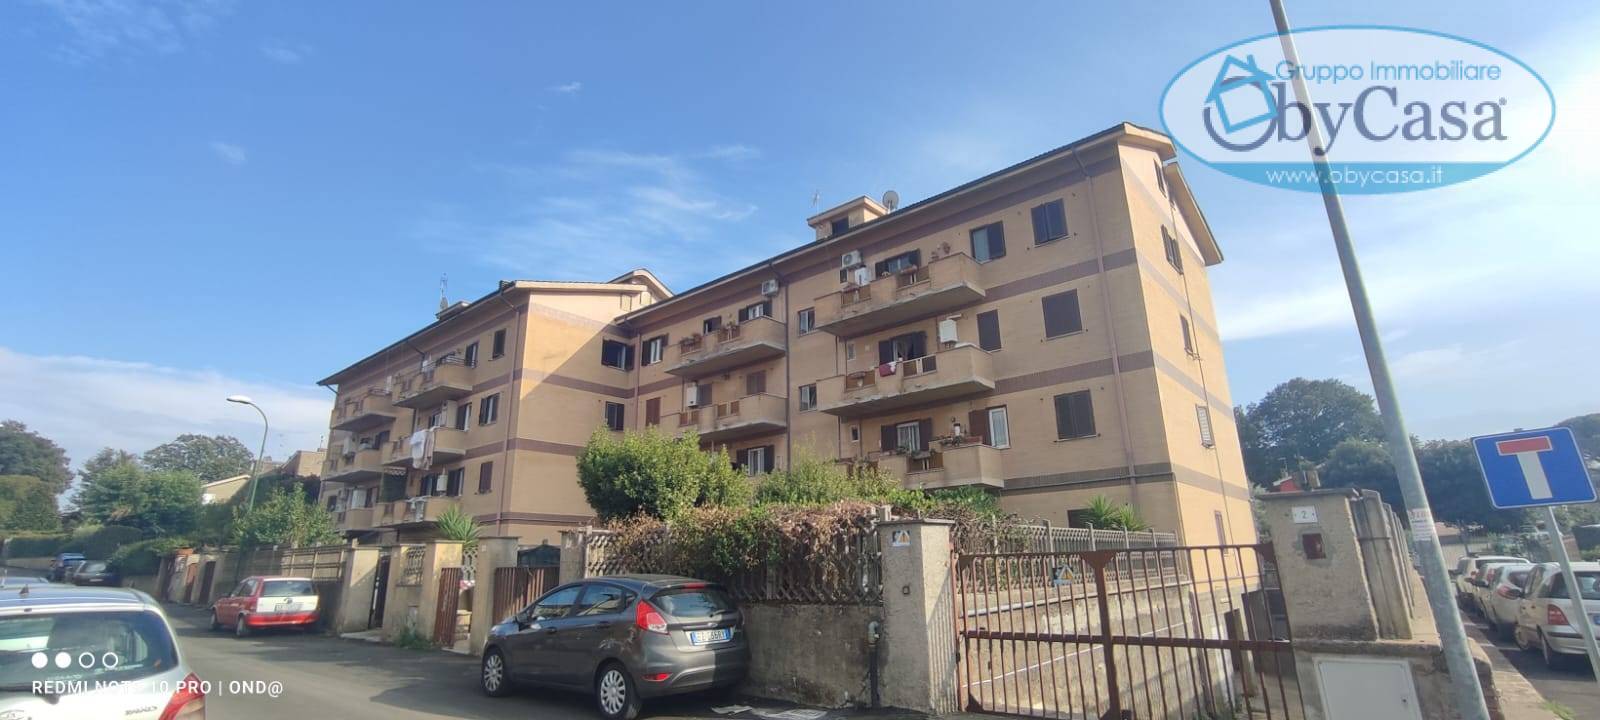 Appartamento in vendita a Manziana, 3 locali, zona Località: legrazie, prezzo € 69.000 | PortaleAgenzieImmobiliari.it